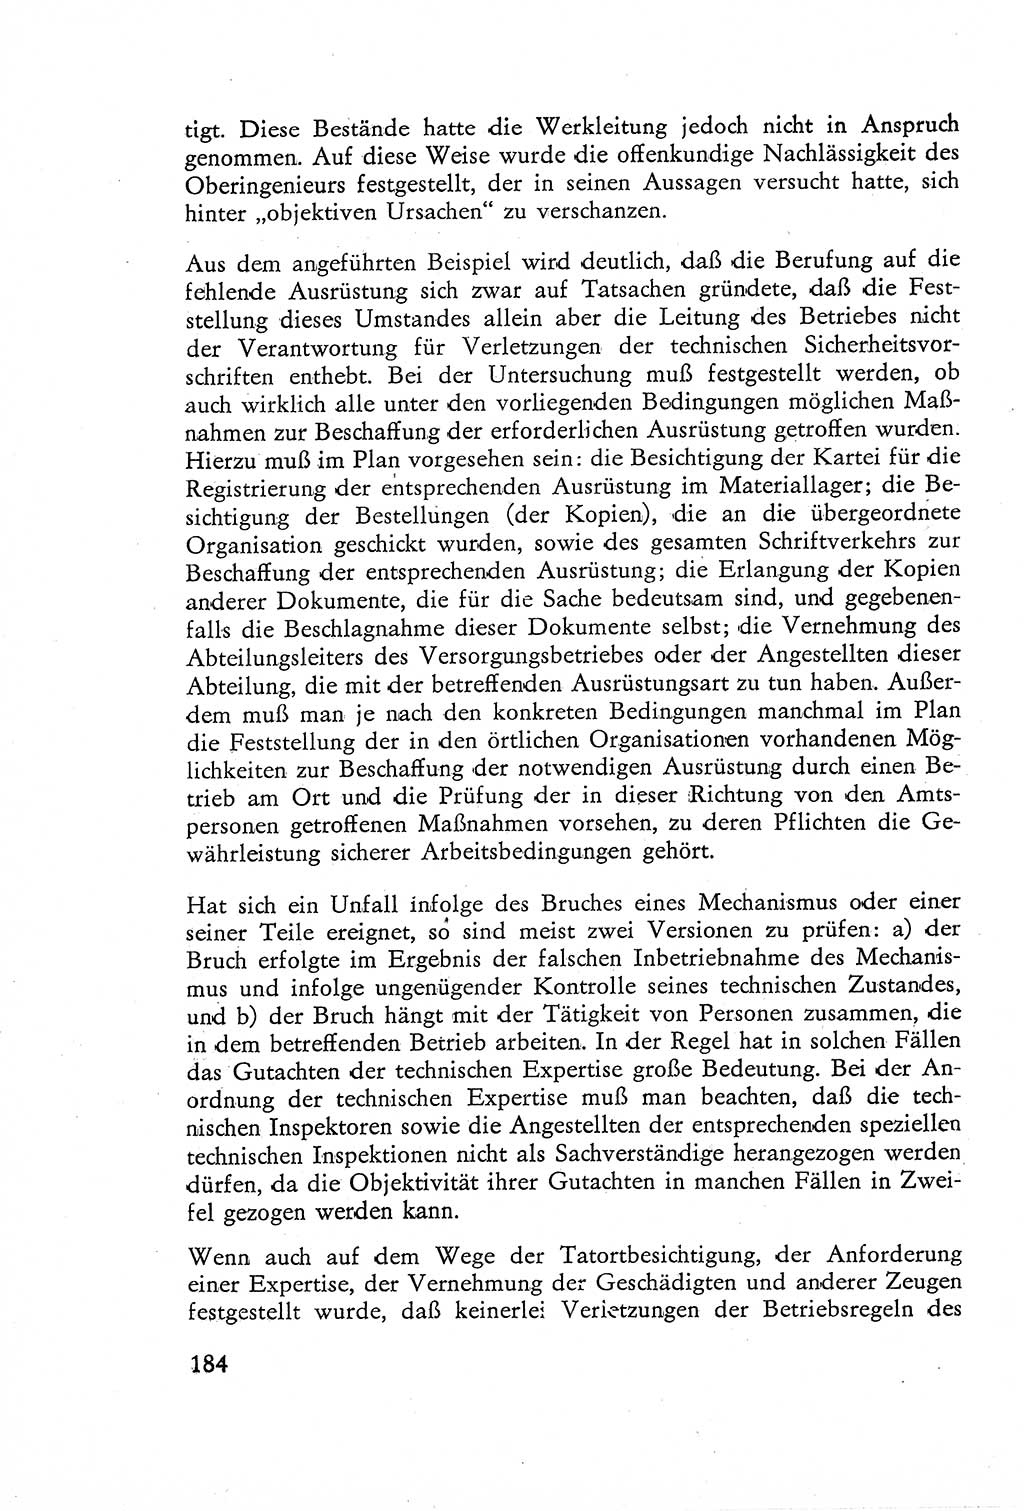 Die Untersuchung einzelner Verbrechensarten [Deutsche Demokratische Republik (DDR)] 1960, Seite 184 (Unters. Verbr.-Art. DDR 1960, S. 184)